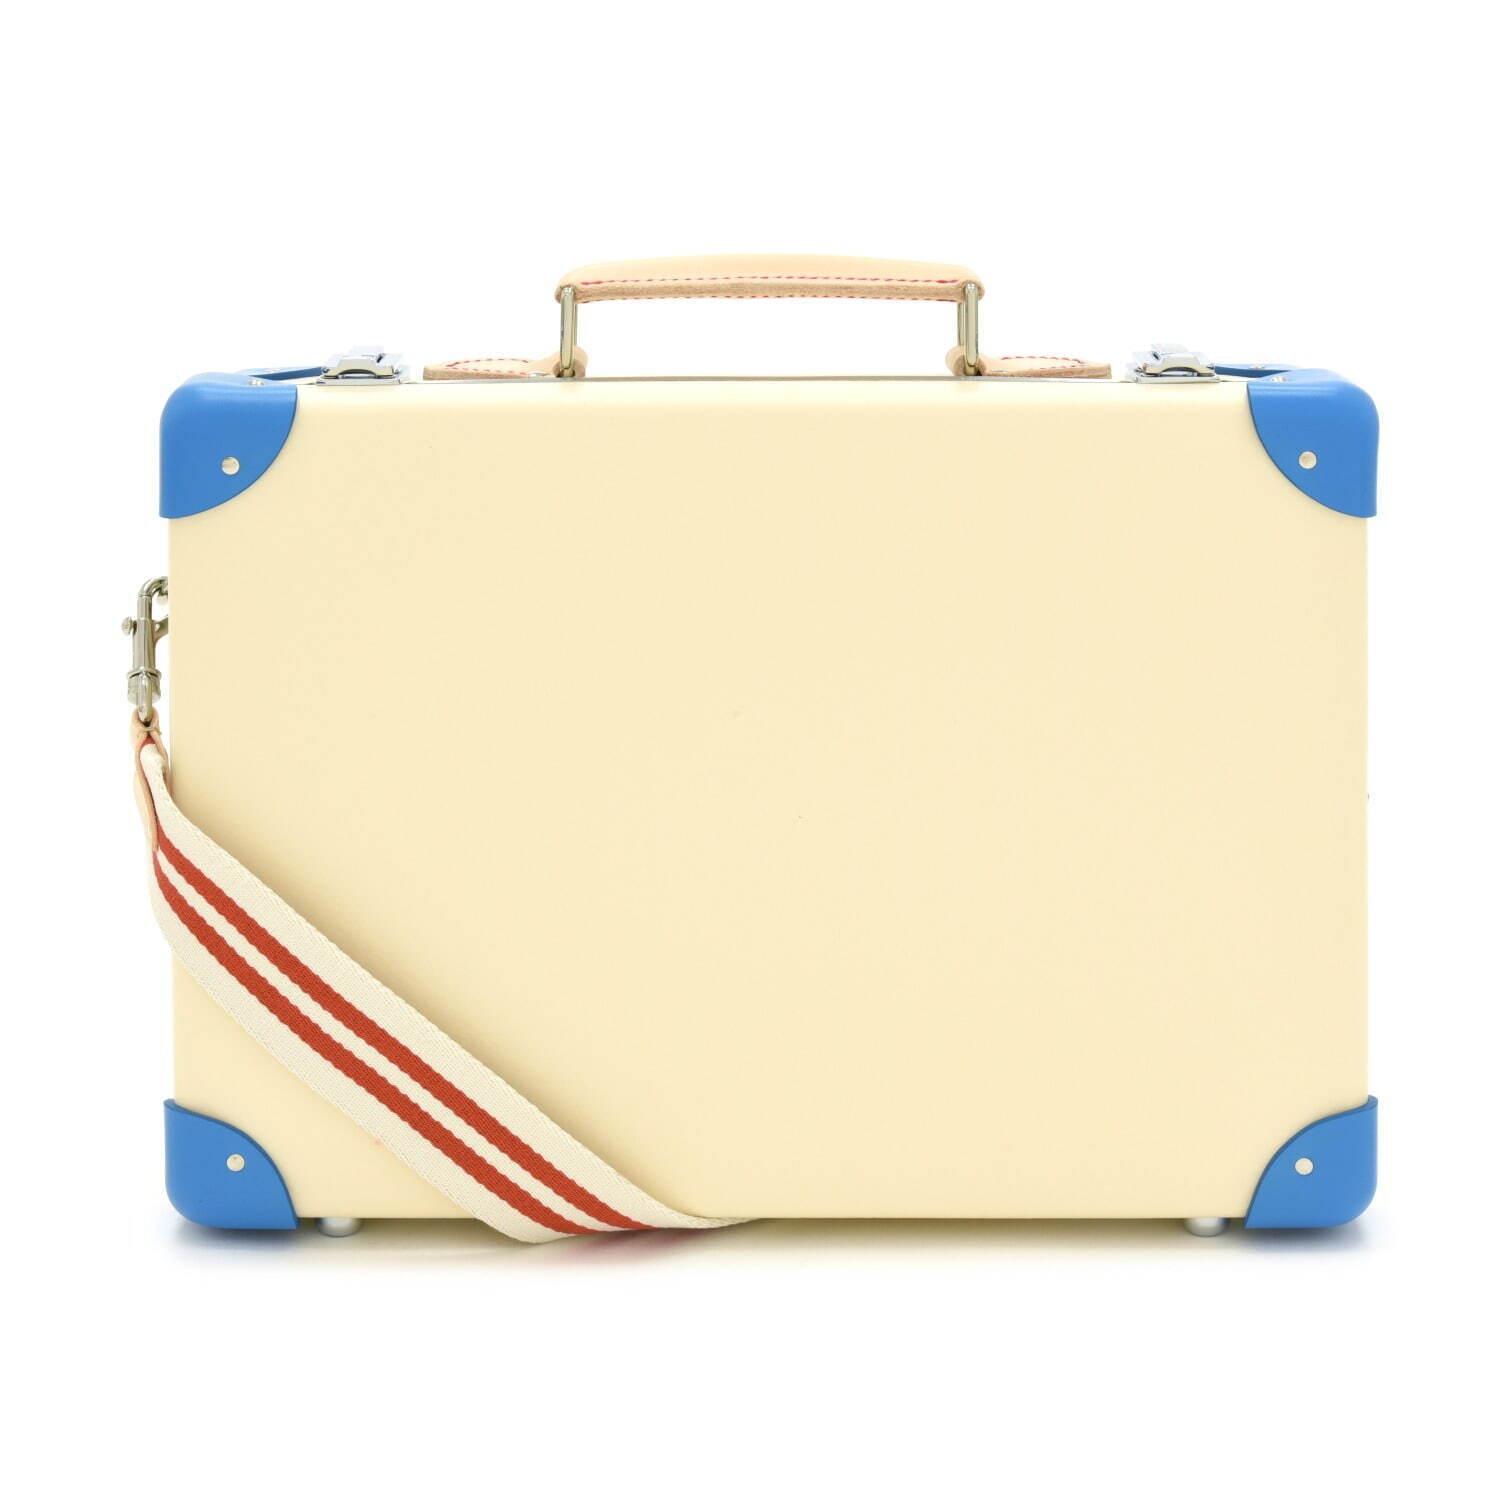 グローブ・トロッター“英国の家族旅行”着想のストライプ柄スーツケース、白い砂浜×青い海カラー コピー